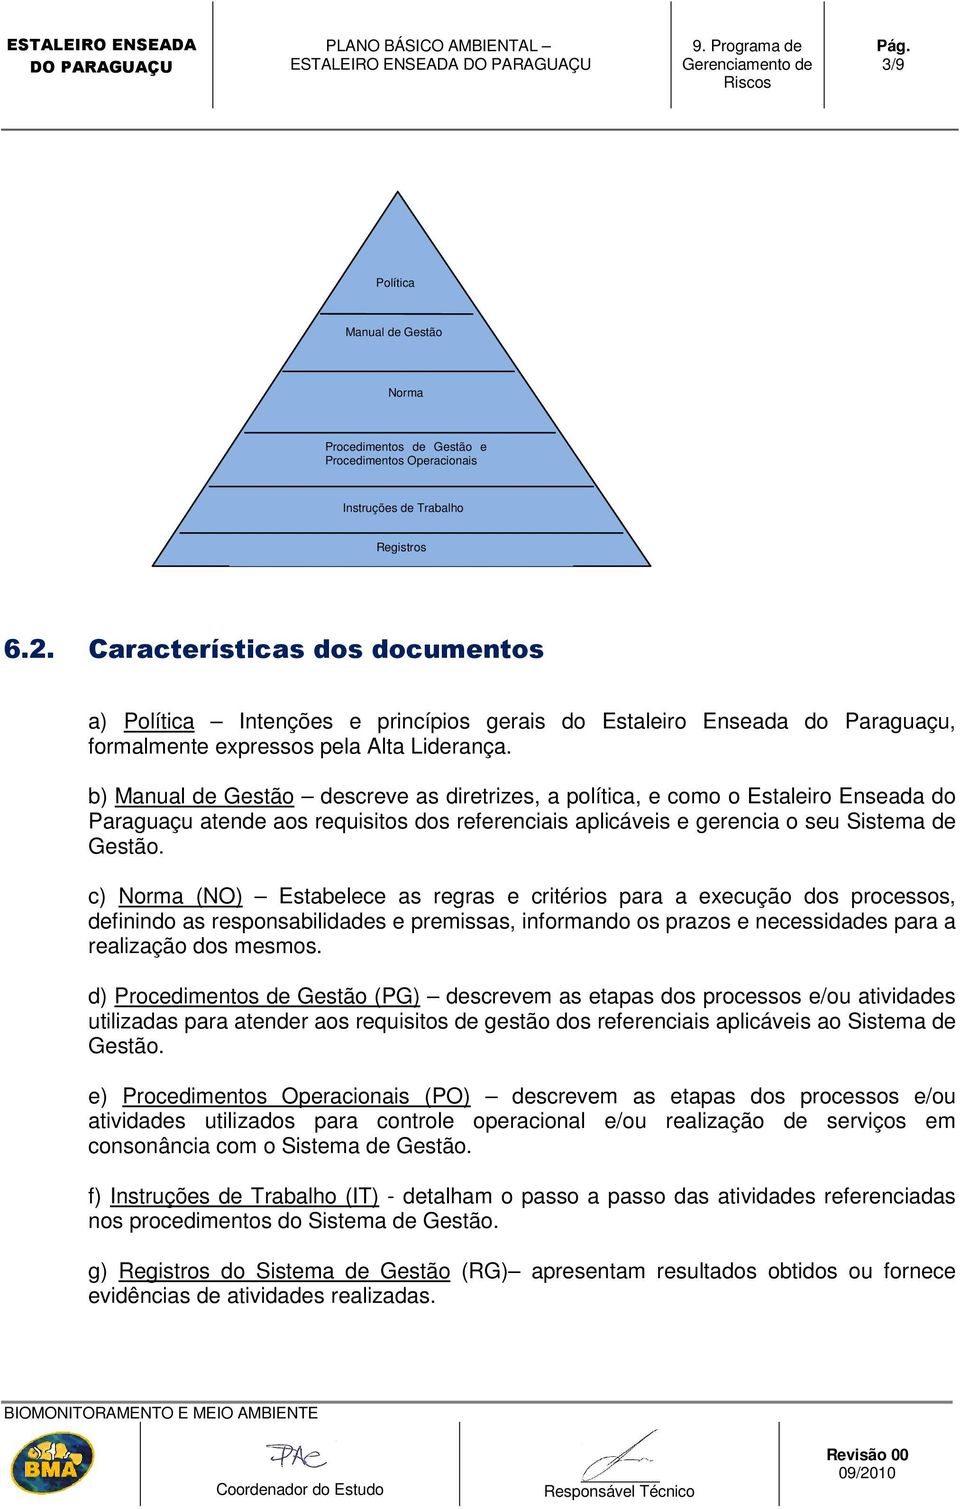 b) Manual de Gestão descreve as diretrizes, a política, e como o Estaleiro Enseada do Paraguaçu atende aos requisitos dos referenciais aplicáveis e gerencia o seu Sistema de Gestão.